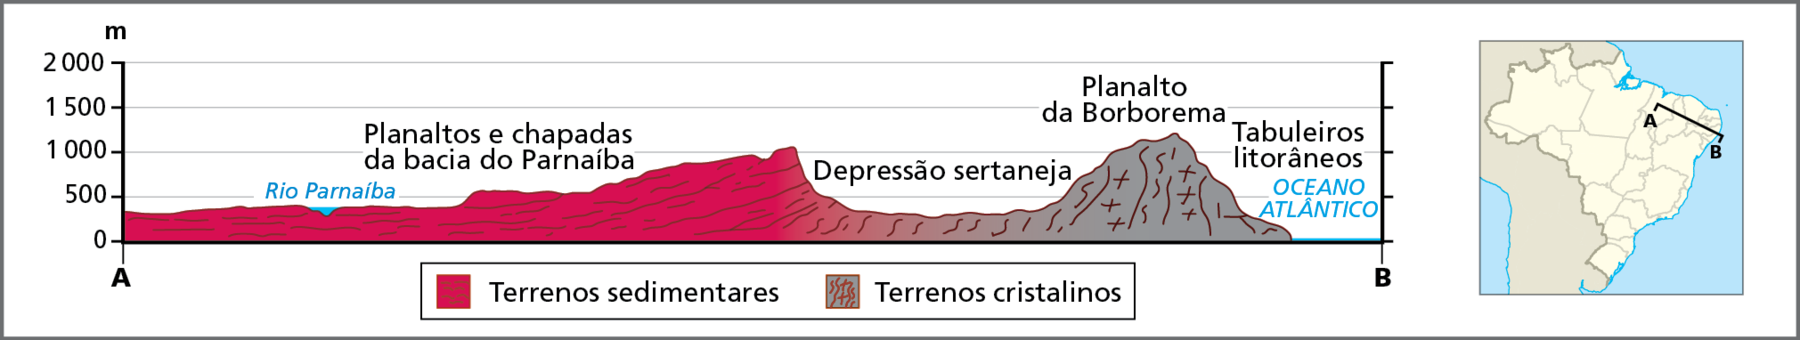 Gráfico. Nordeste: perfil do relevo.
Gráfico representando um perfil topográfico das principais formas do relevo da Região Nordeste. À direita do gráfico, mapa reduzido do Brasil com a marcação da linha de corte do perfil, traçada entre o ponto A, localizado na porção oeste do Maranhão, e o ponto B, localizado na faixa oceânica próxima ao continente. A linha do perfil está posicionada na direção de oeste-noroeste a leste-sudeste. 
No perfil traçado no gráfico, a distância entre os pontos A e B representa o eixo horizontal; o eixo vertical indica os intervalos das cotas de altitudes em metros: 0 (nível do mar), 500, 1.000. 1.500 e 2.000. 
O ponto A se encontra a aproximadamente 480 metros de altitude, sob terrenos sedimentares dos planaltos e chapadas da bacia do Parnaíba. Seguindo em direção ao ponto B, o perfil do relevo varia em terras de altitudes entre 500 e 1.000 metros, até avançar ao longo da depressão sertaneja, que se encontra em terras de altitudes que variam entre 450 e 500 metros. Na sequência, ao longo do planalto da Borborema, sob terrenos cristalinos, as altitudes são mais elevadas, chegando a aproximadamente 1.200 metros. Adentrando os tabuleiros litorâneos, as altitudes diminuem até atingir o nível do mar, onde está localizado o ponto B.